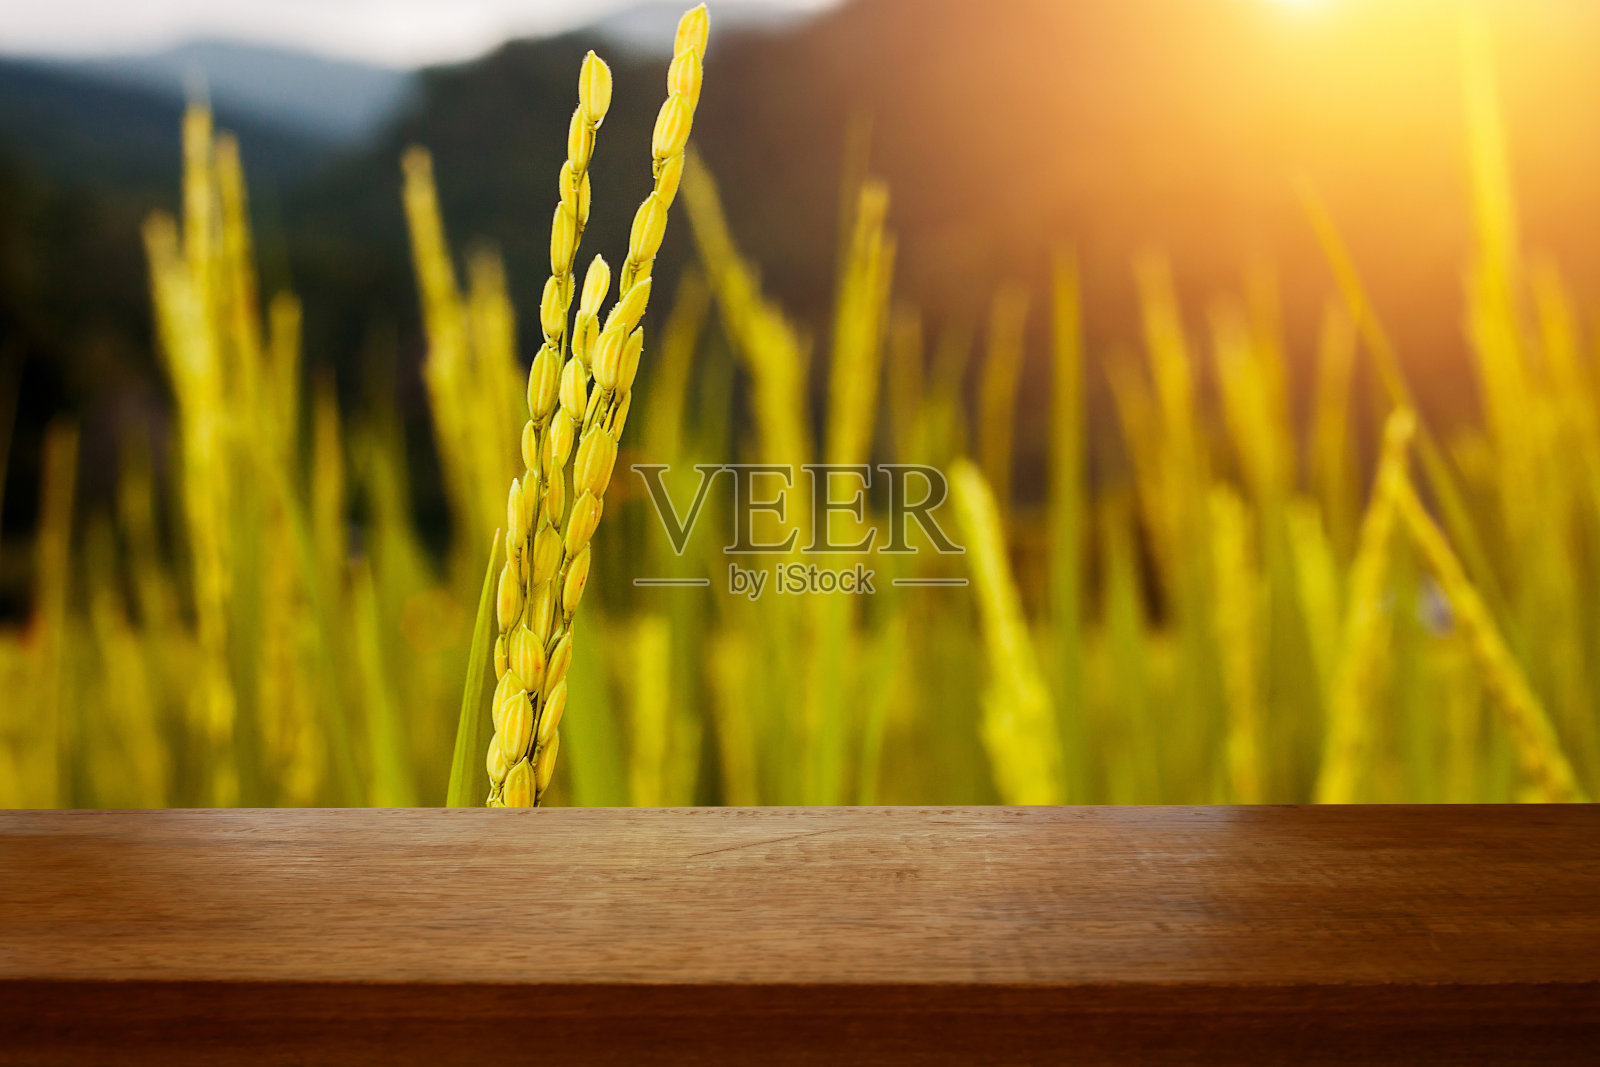 木板台前是一片金黄的稻田，在稻田里沐浴着晨光。准备好产品展示蒙太奇照片摄影图片